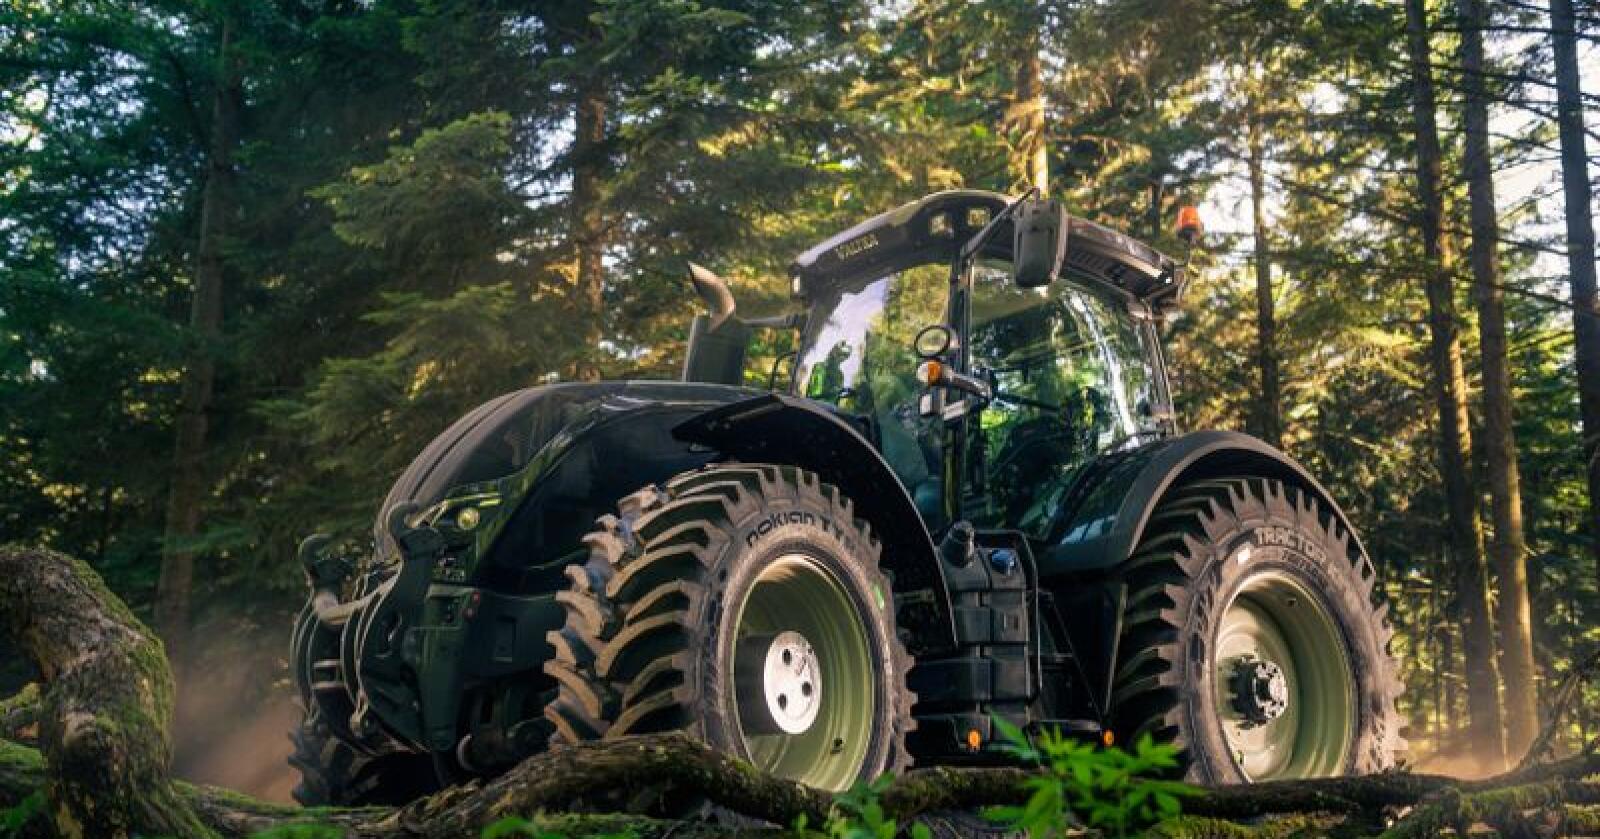 Nokians nye Tractor King skal i følge produsenten forene anleggsdekkets styrke med trakordekkets særegne egenskaper